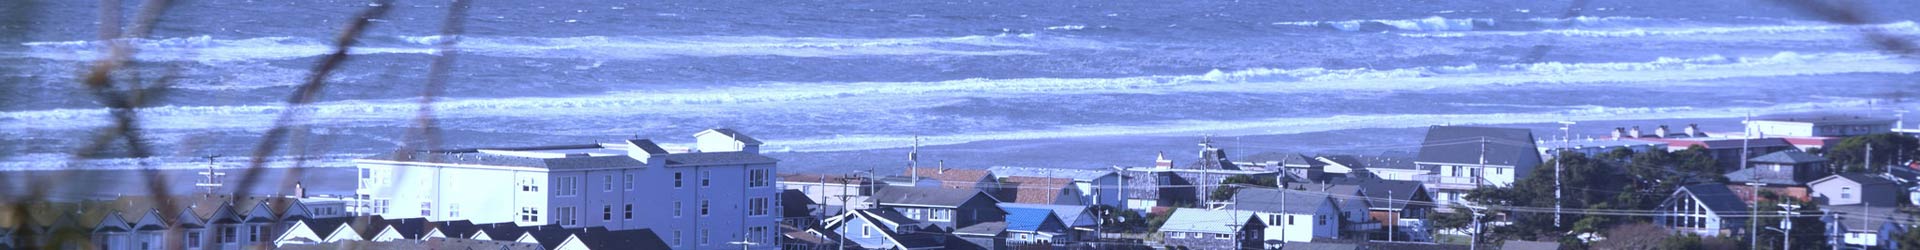 View of buildings and ocean, Rockaway Beach, Oregon